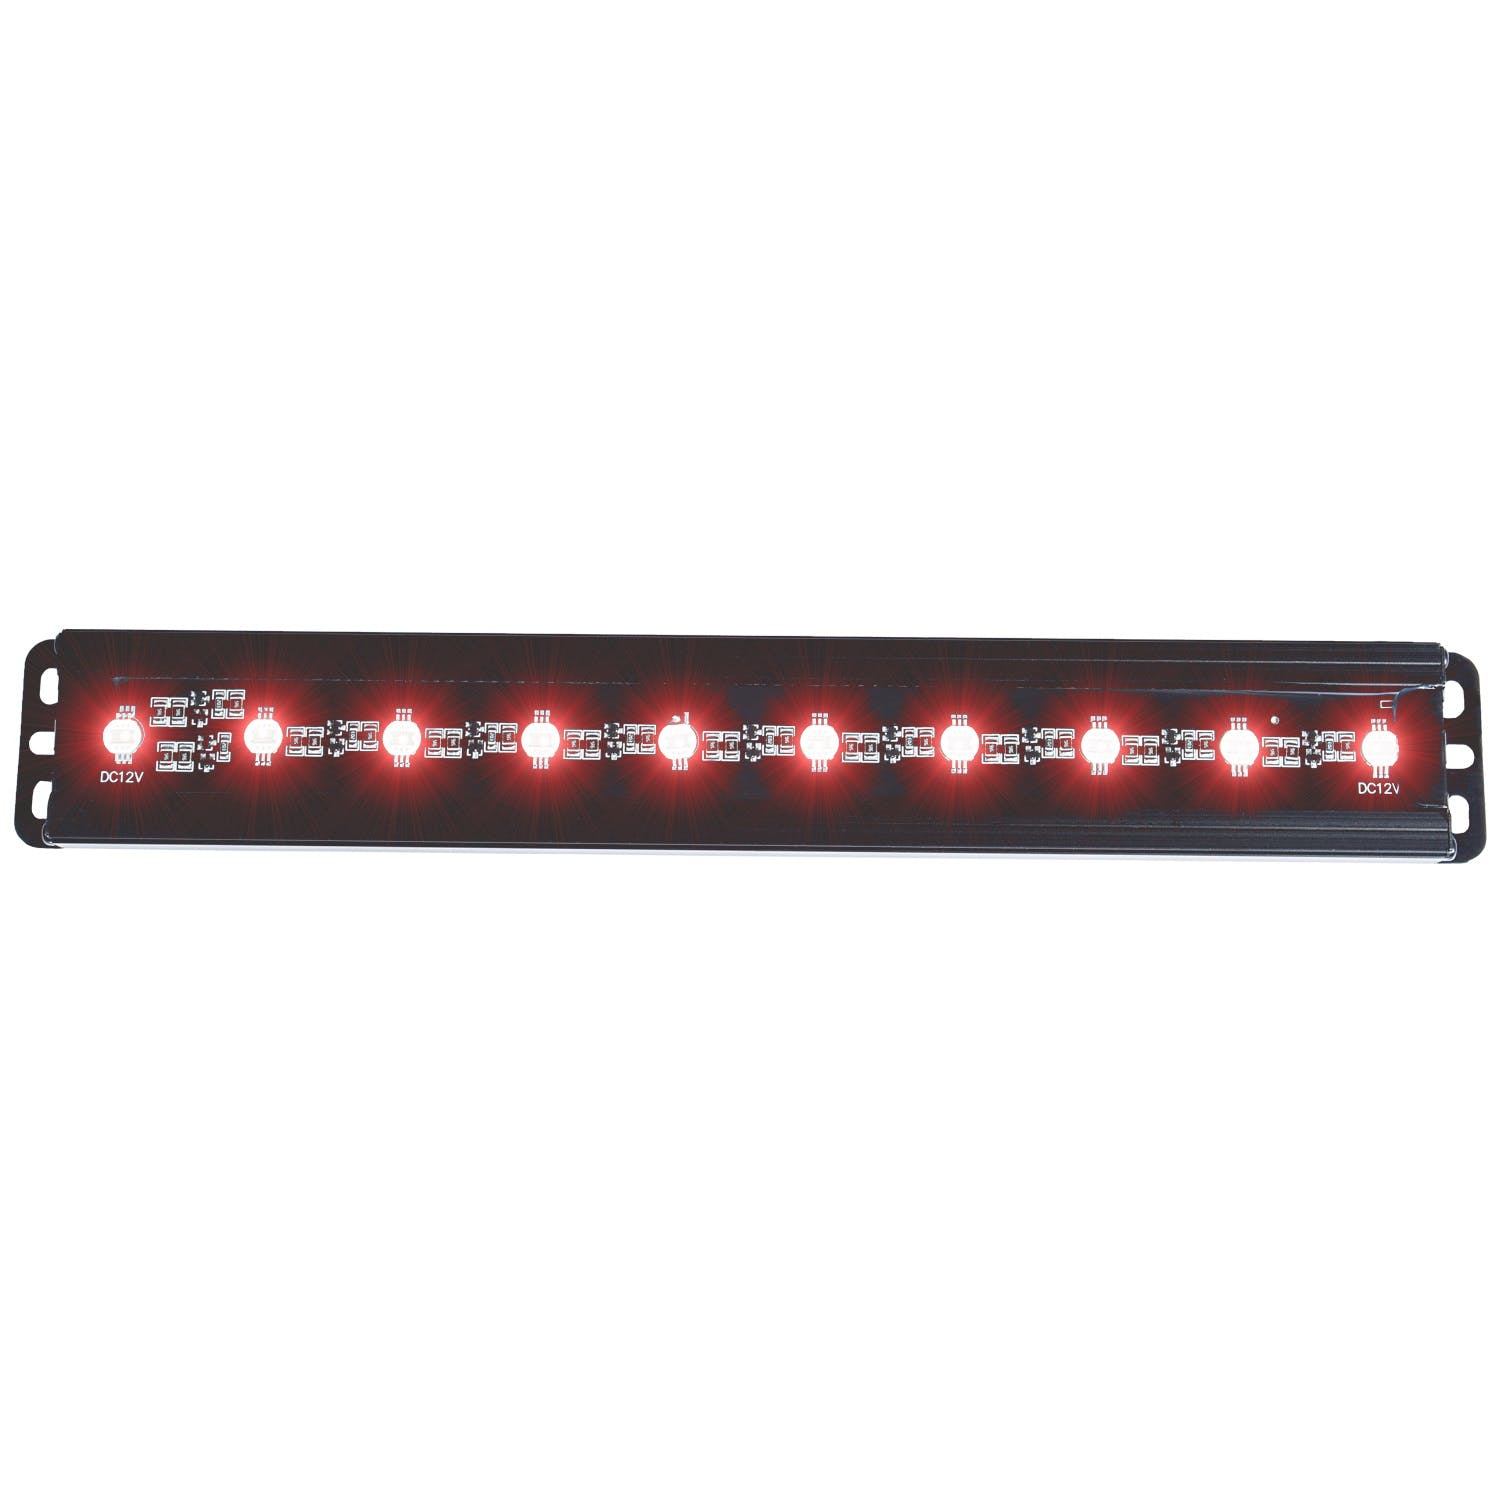 AnzoUSA 861152 12" Slimline LED Light Bar (Red)